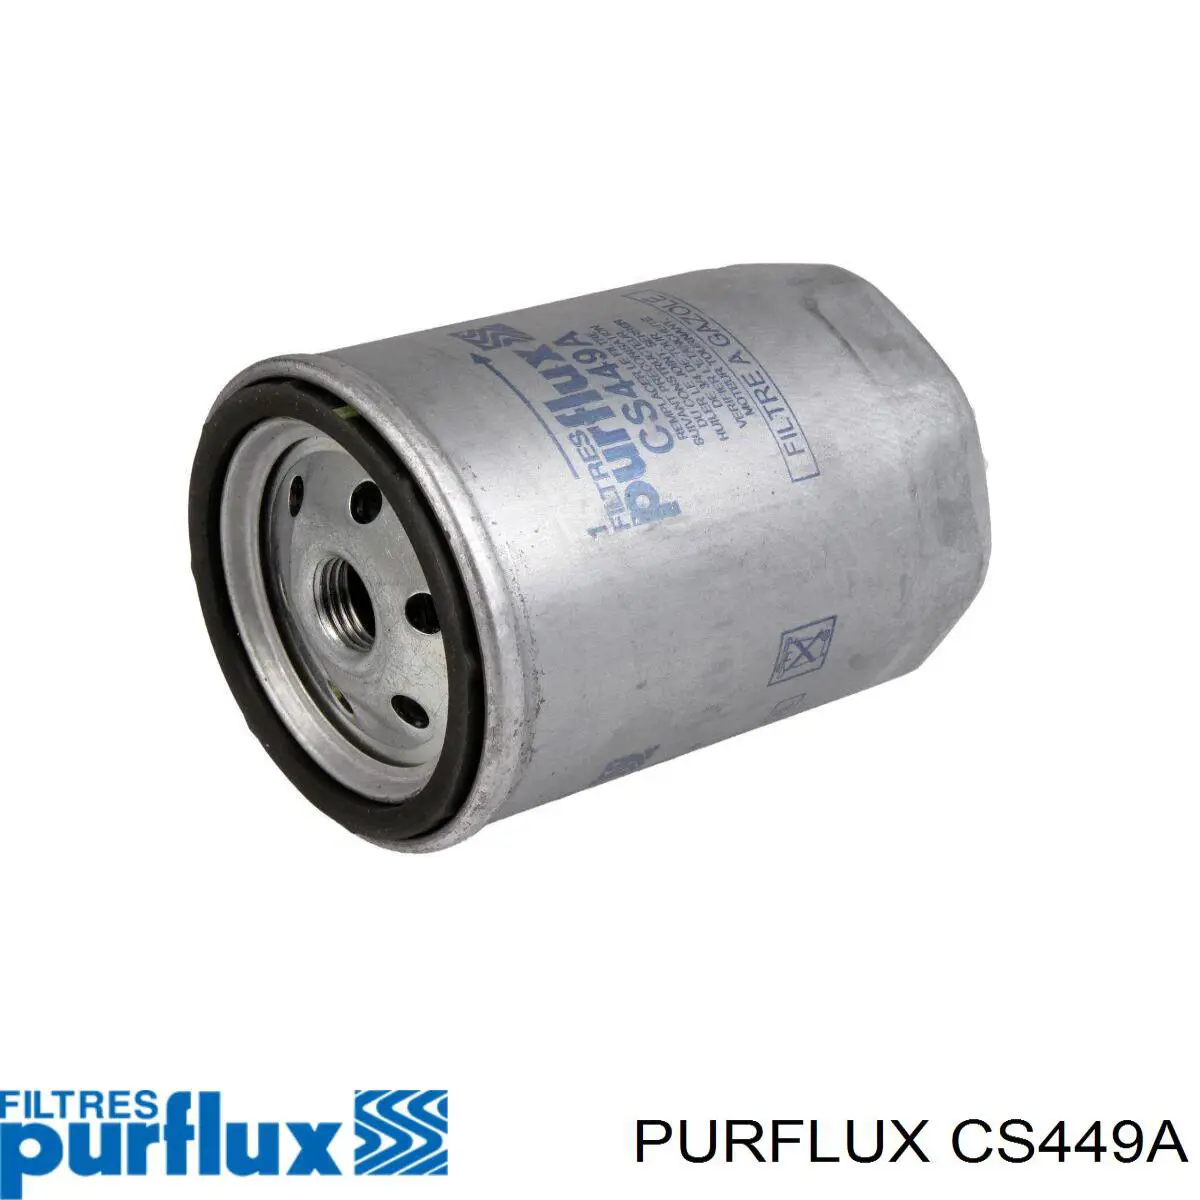 Filtro combustible CS449A Purflux